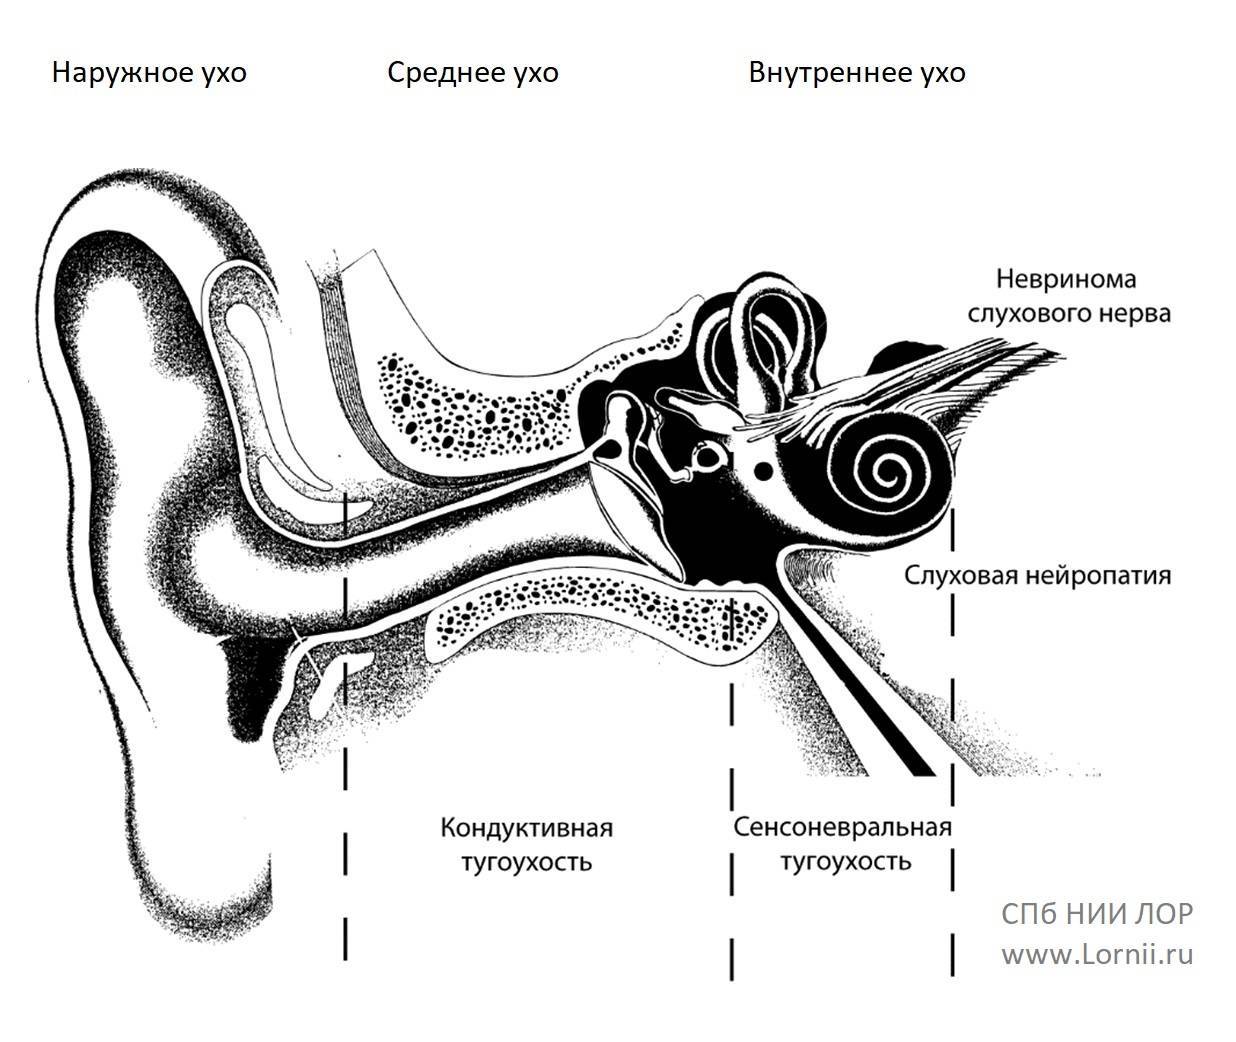 Круглое окно внутреннего уха. Нерв внутреннего уха. Строение внутреннего уха человека слуховой нерв. Барабанная перепонка при тугоухости. Строение уха слуховой нерв.